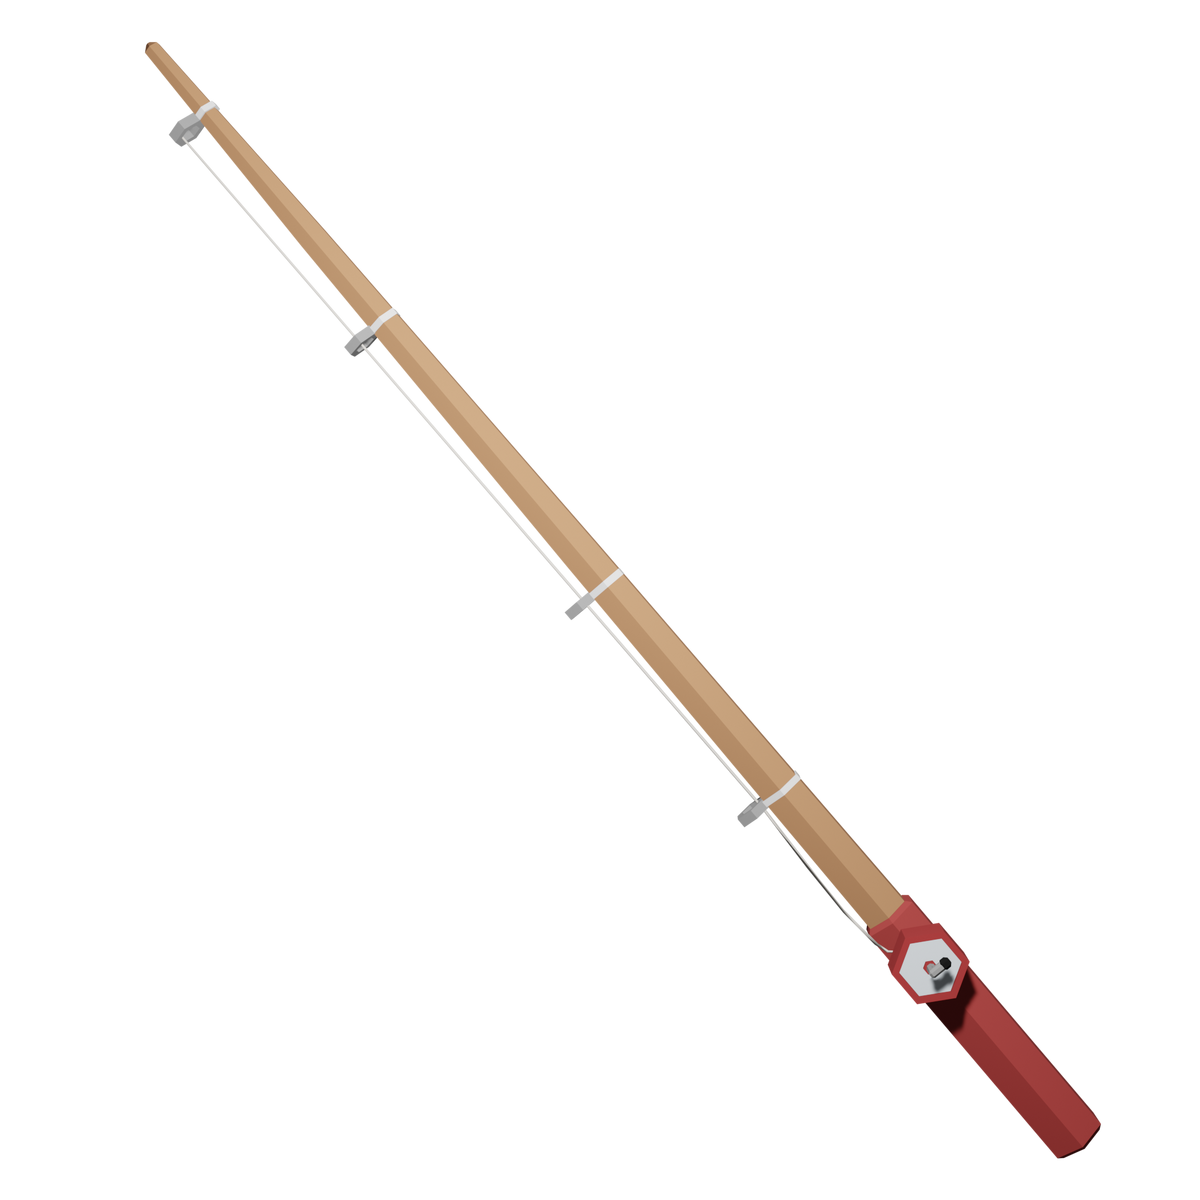 Wooden Fishing Rod, Islands Wiki